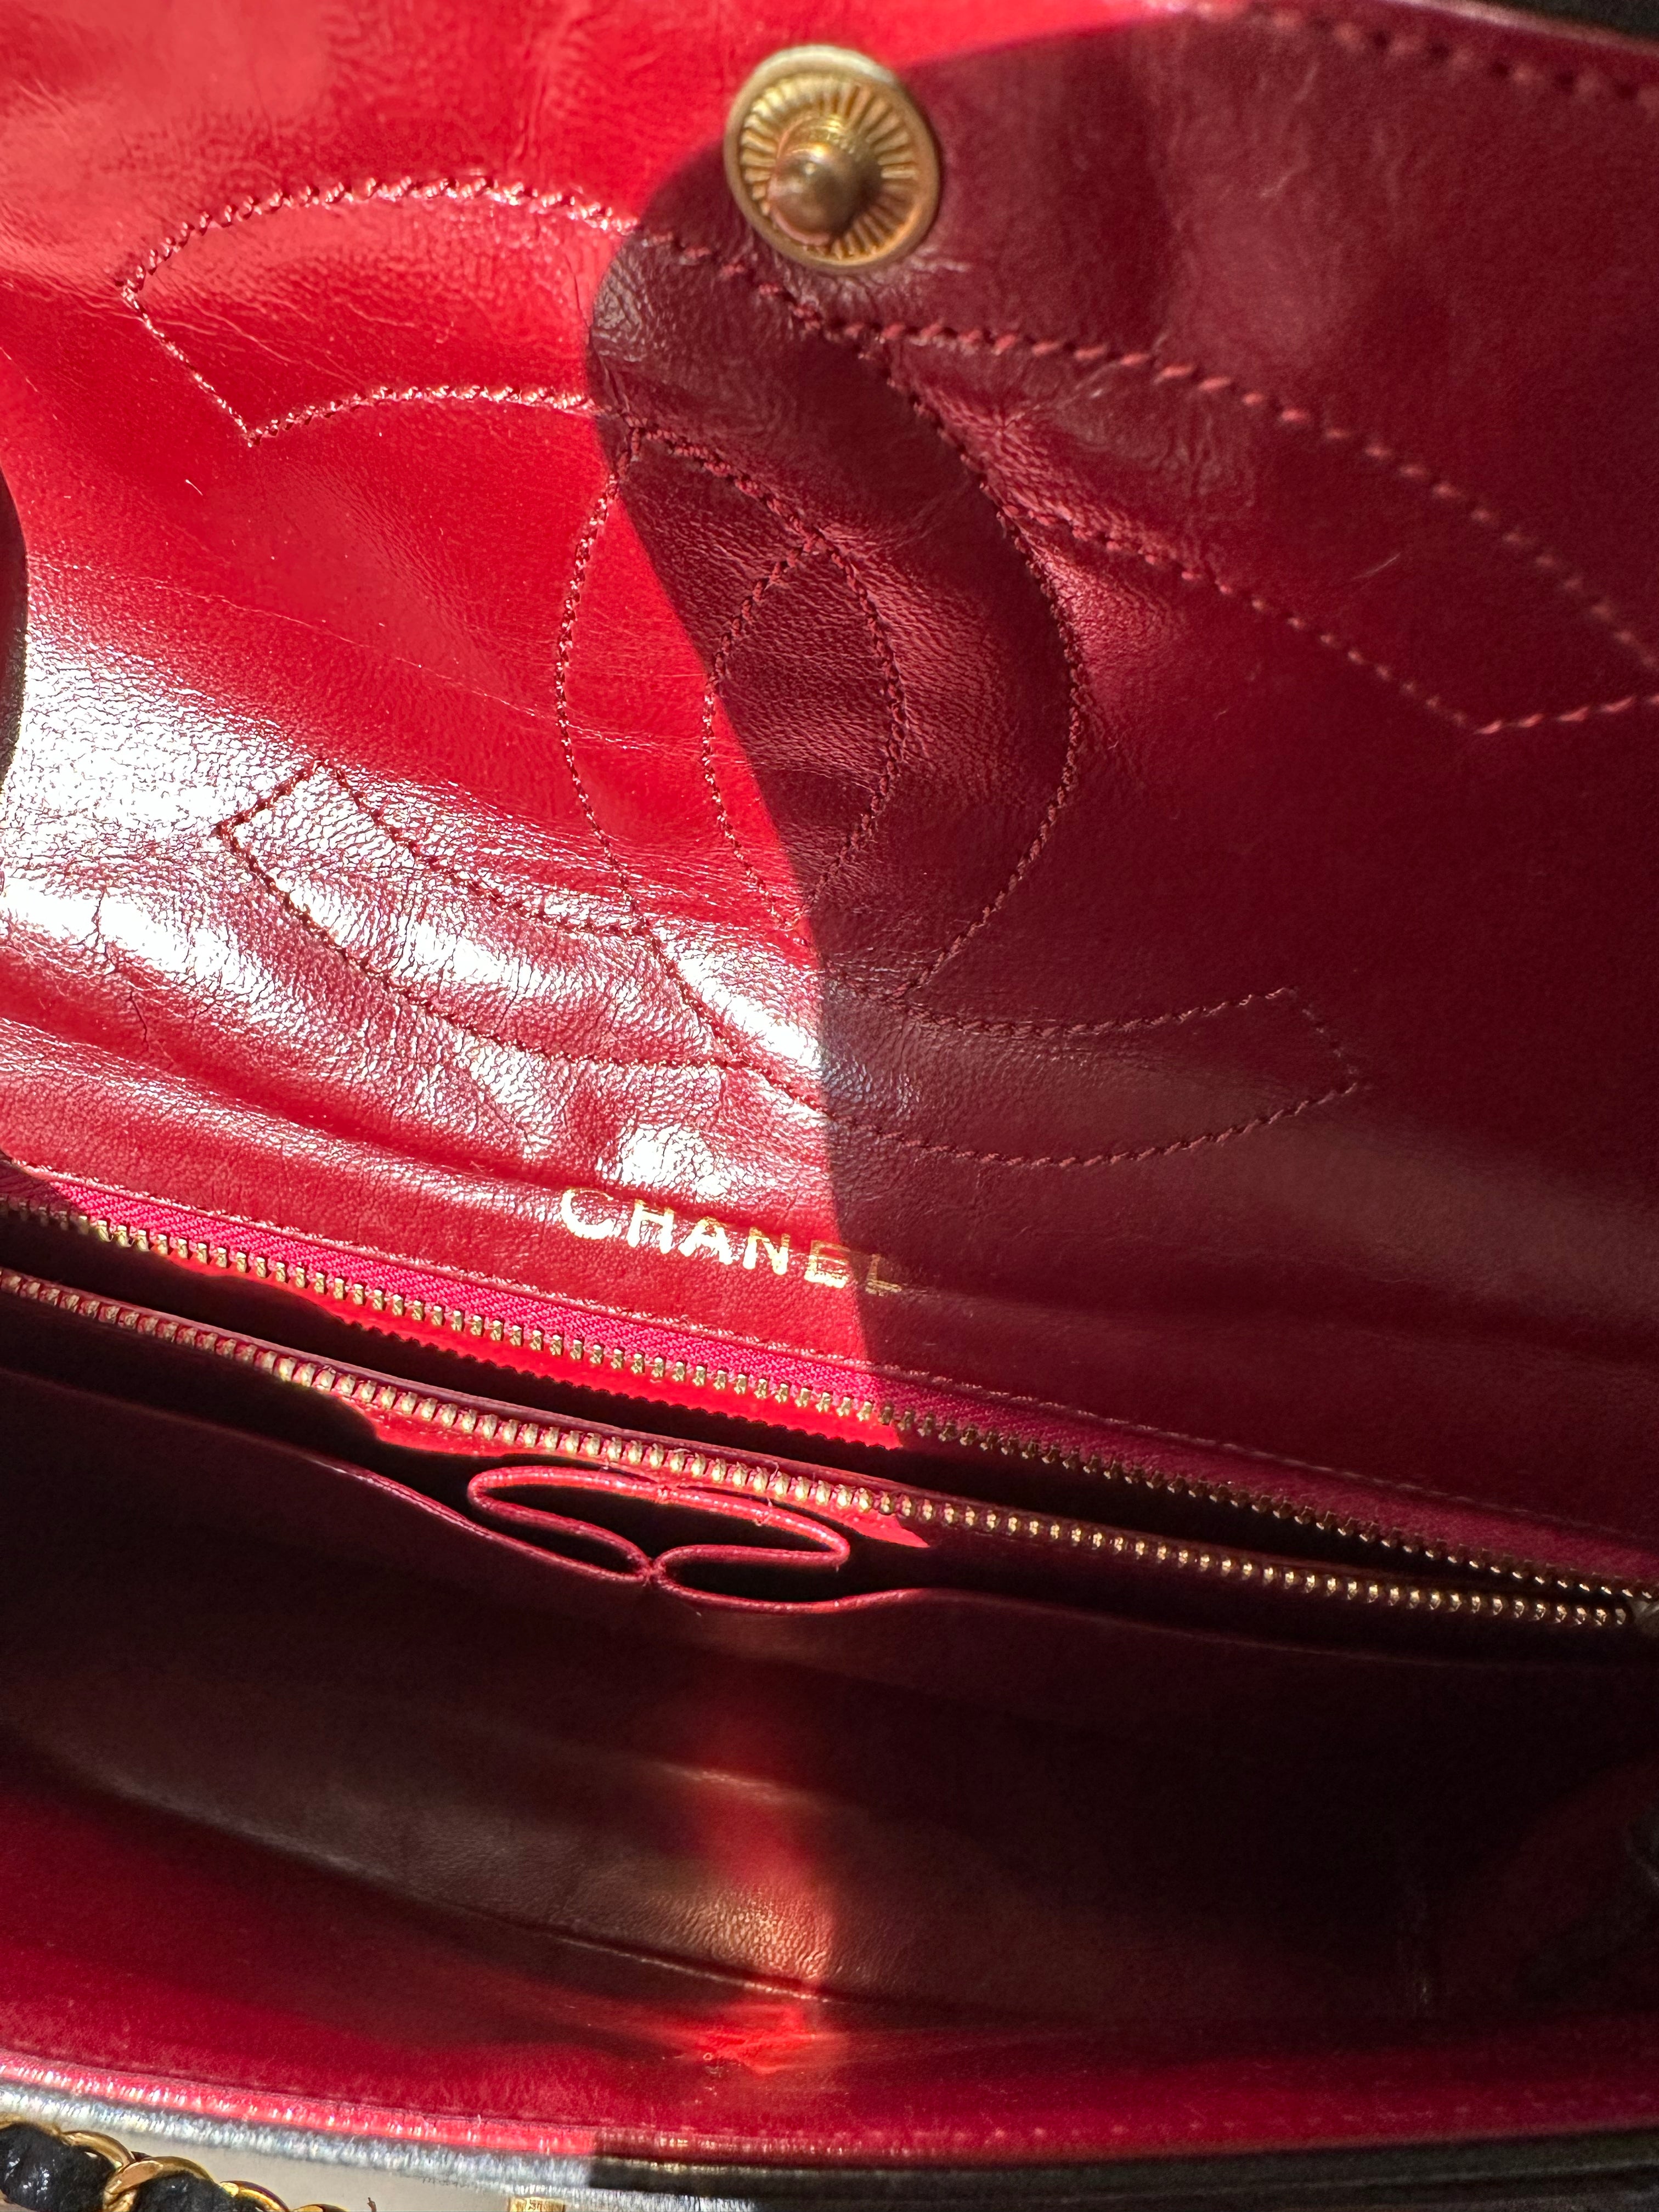 Chanel Paris Double Flap Bag Interior